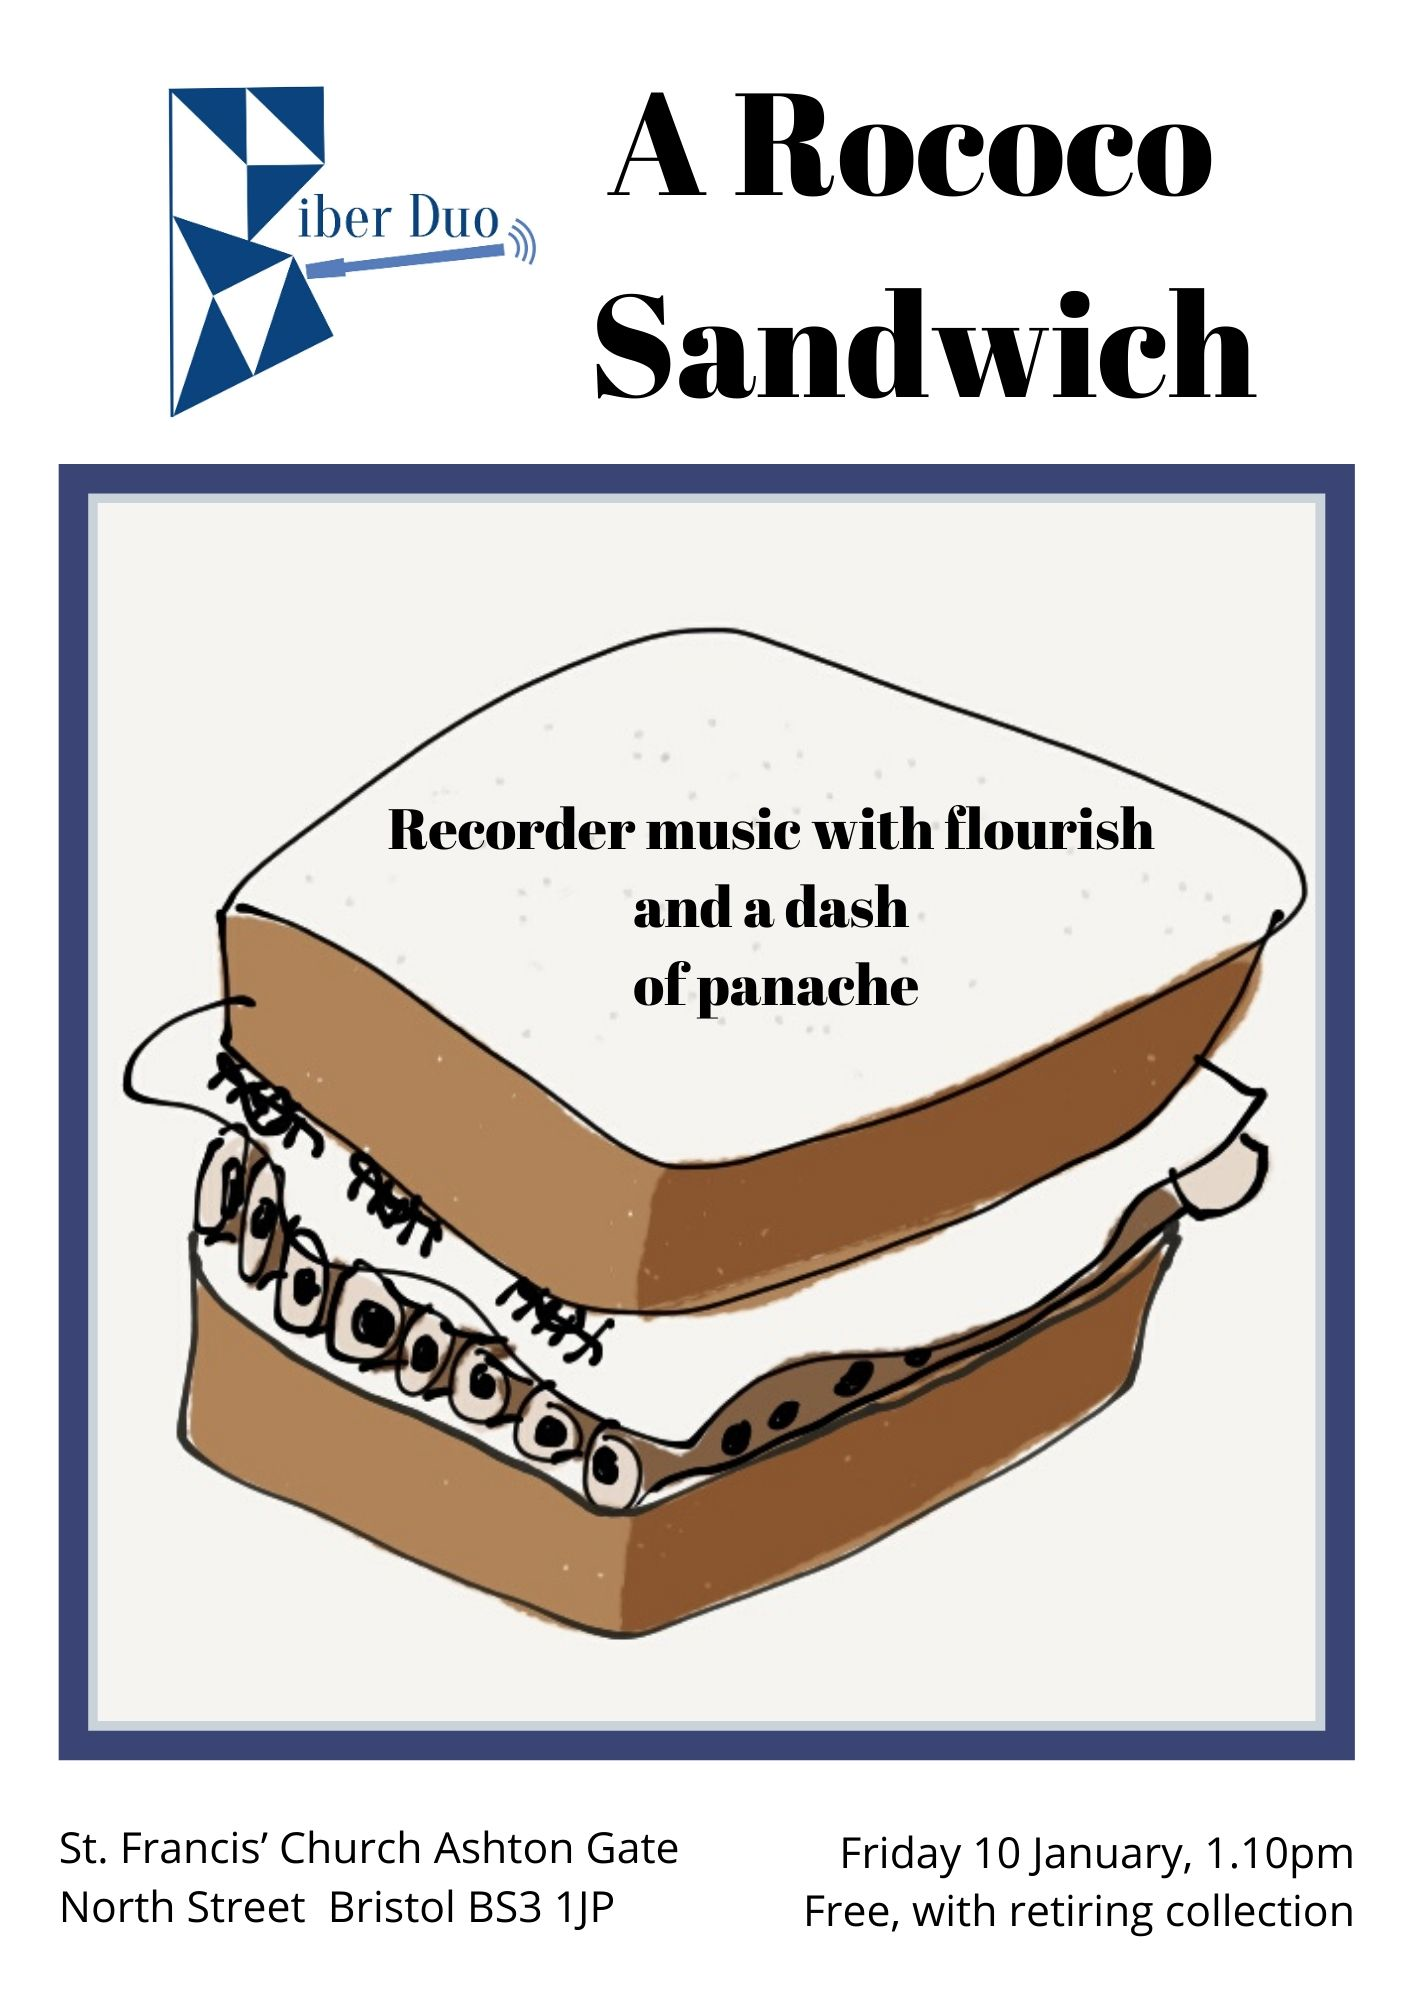 A Rococo Sandwich